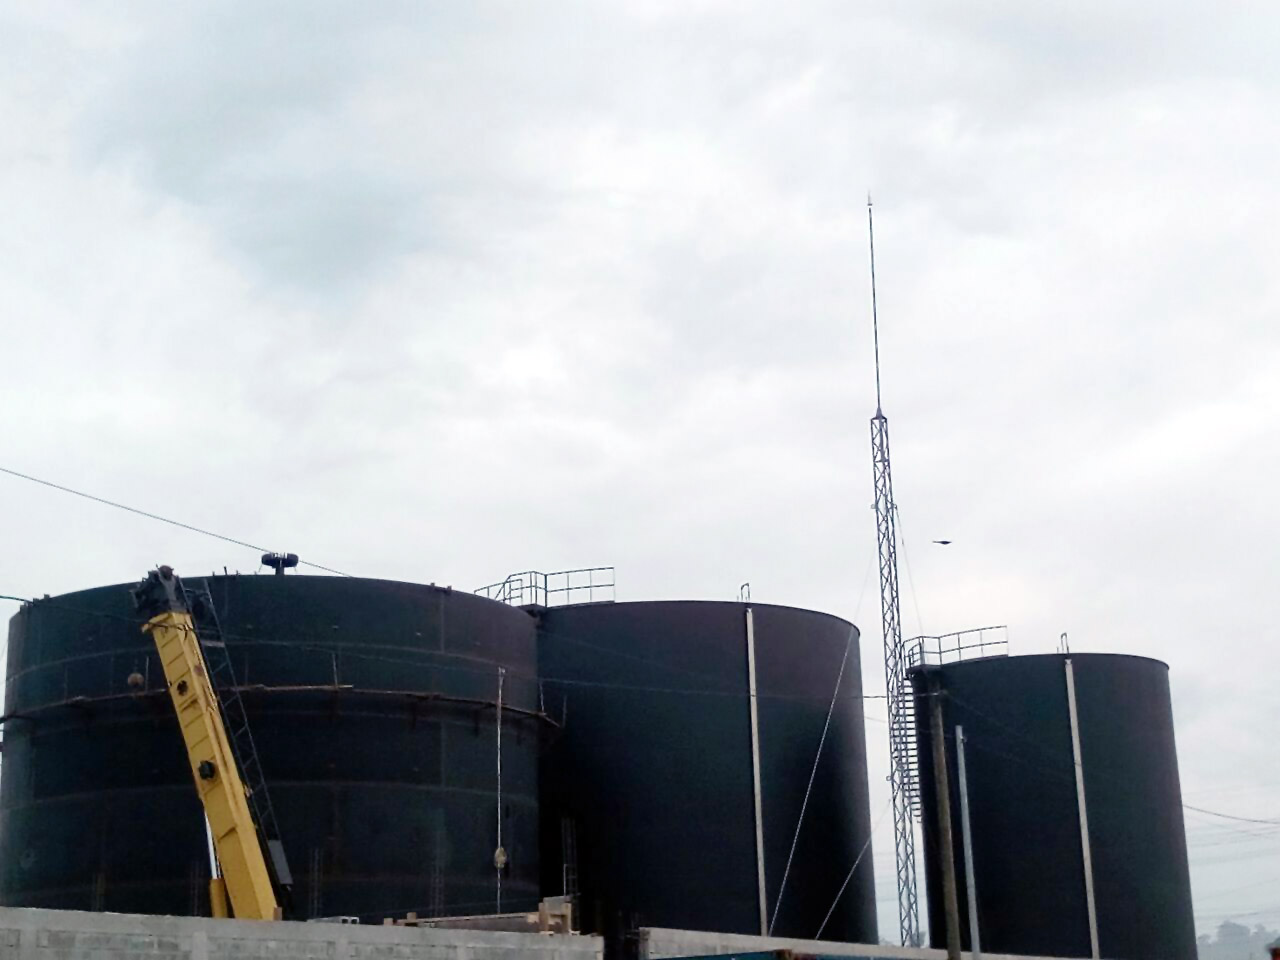 Aplicaciones Tecnológicas protège avec ses paratonnerres des réservoirs d’huile au Guatemala